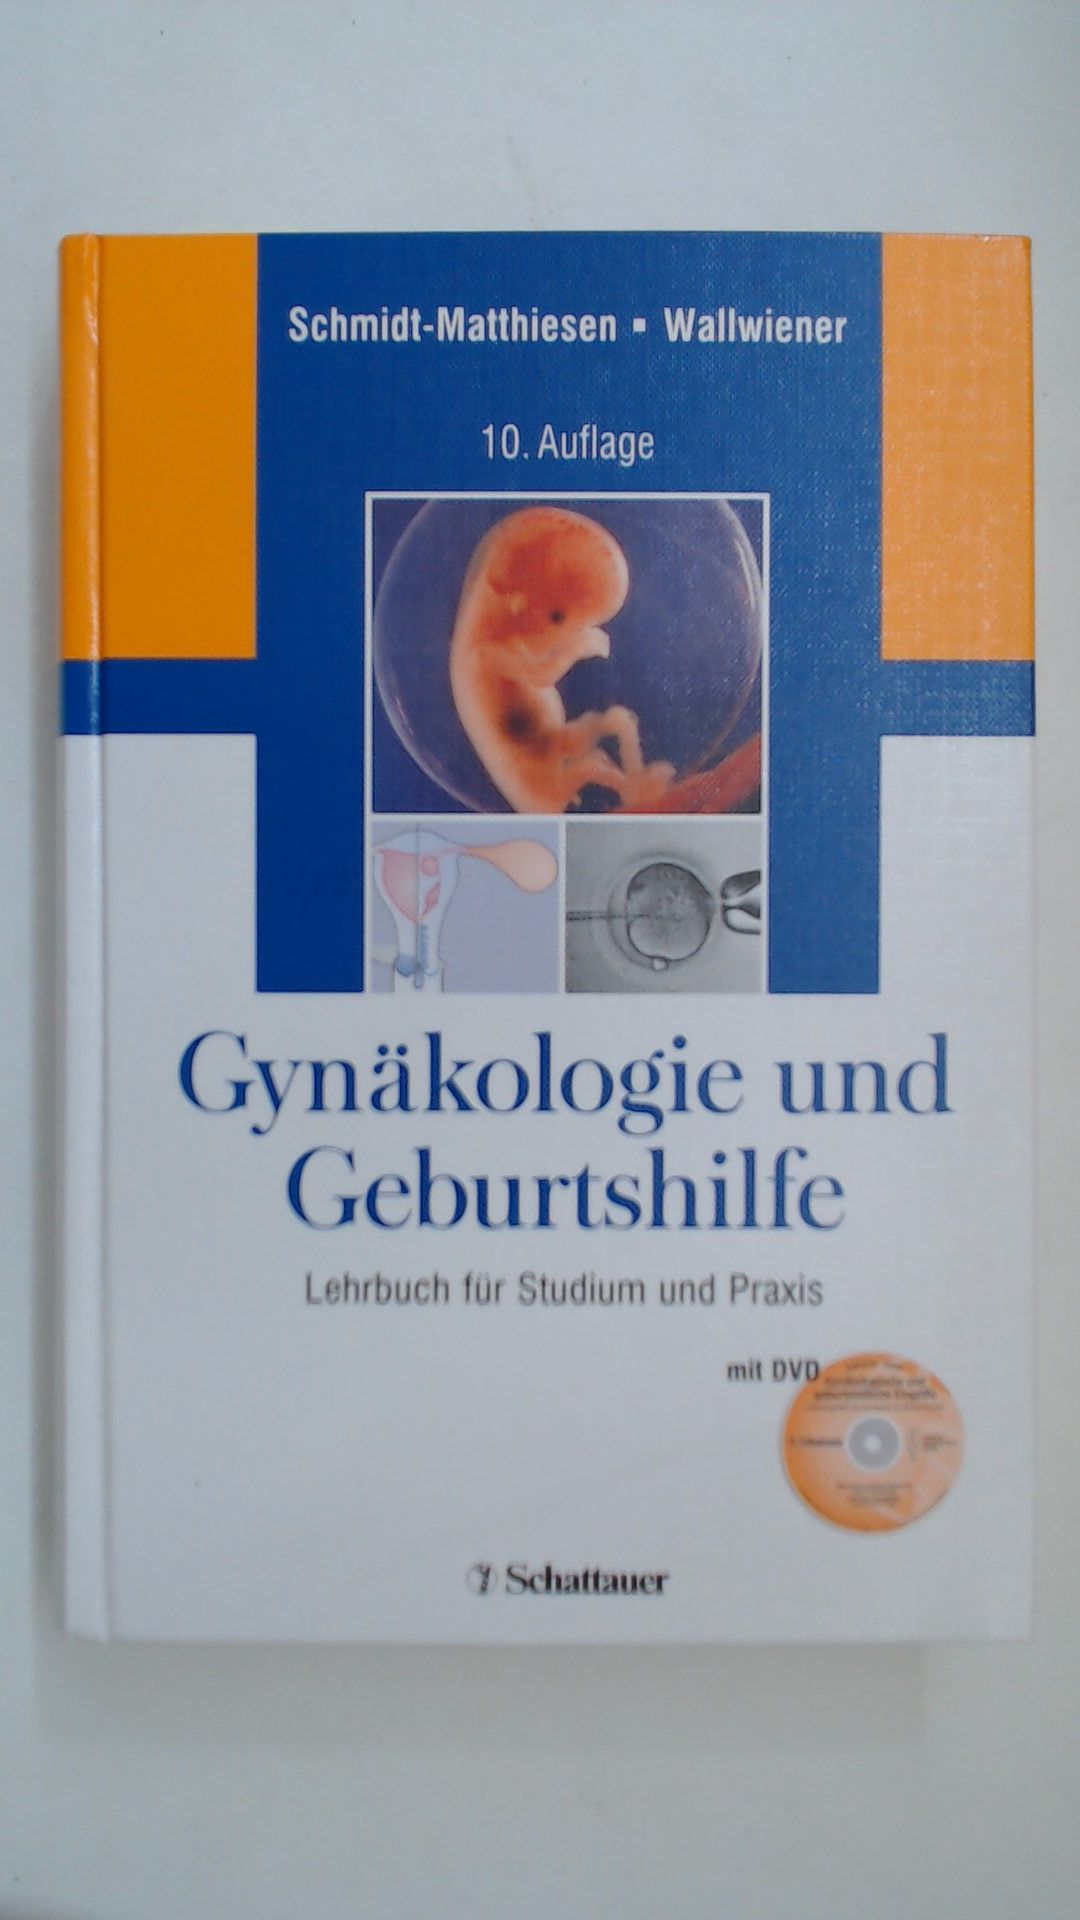 Gynäkologie und Geburtshilfe: Lehrbuch für Studium und Praxis. Mit der DVD 